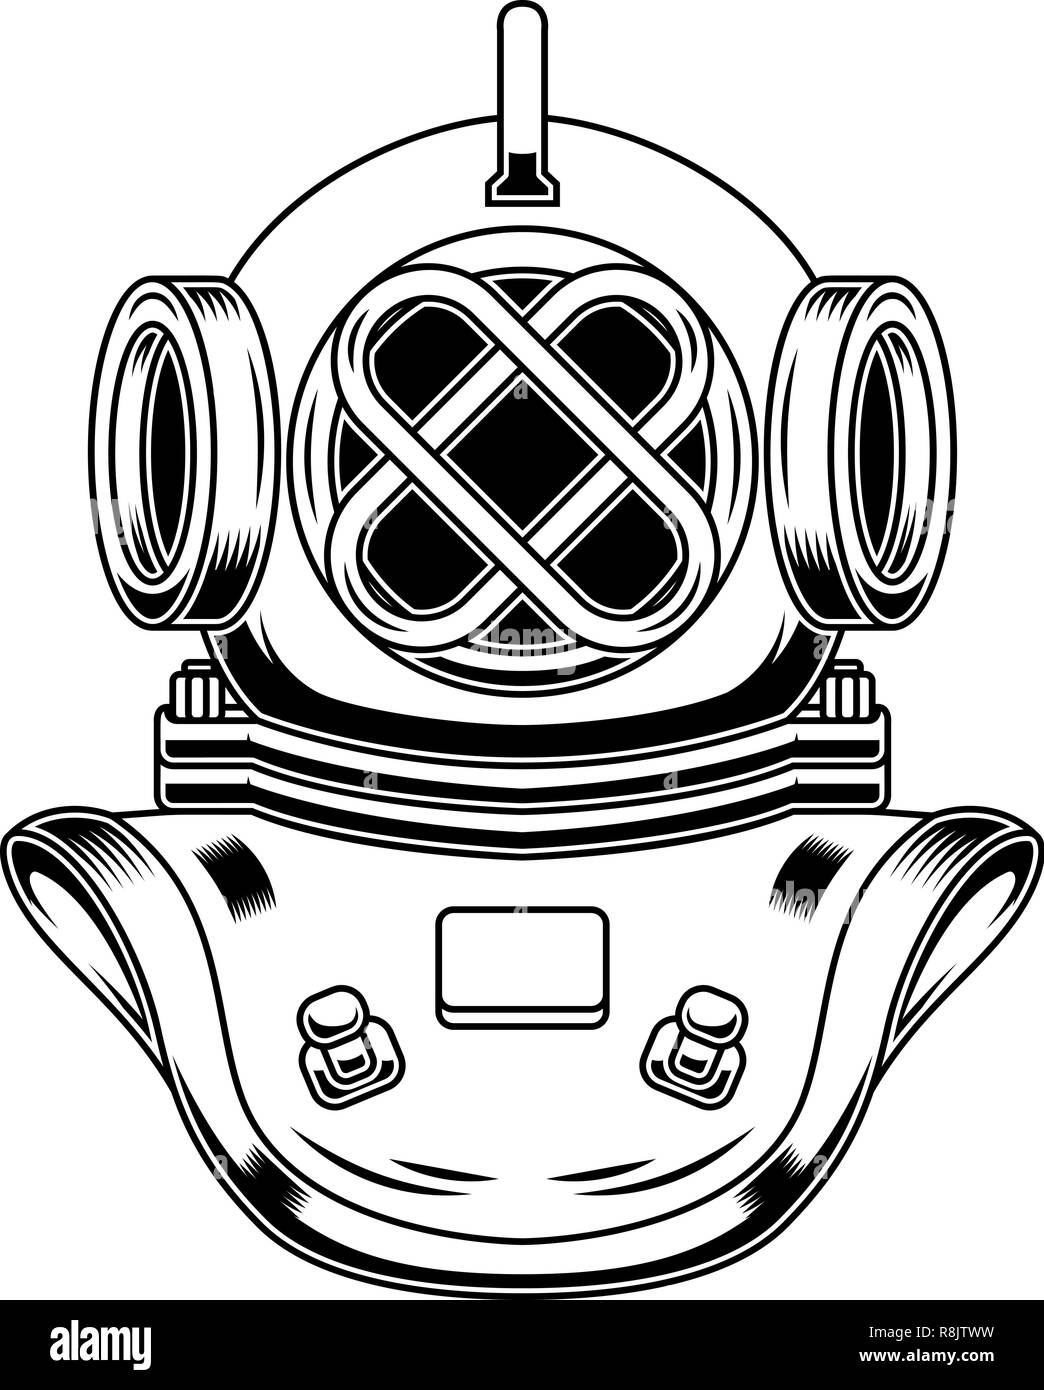 Vintage diver Helm in Gravur Stil. Design Element für Logo, Label, Emblem, Zeichen, Poster, T-Shirt. Vector Illustration Stock Vektor